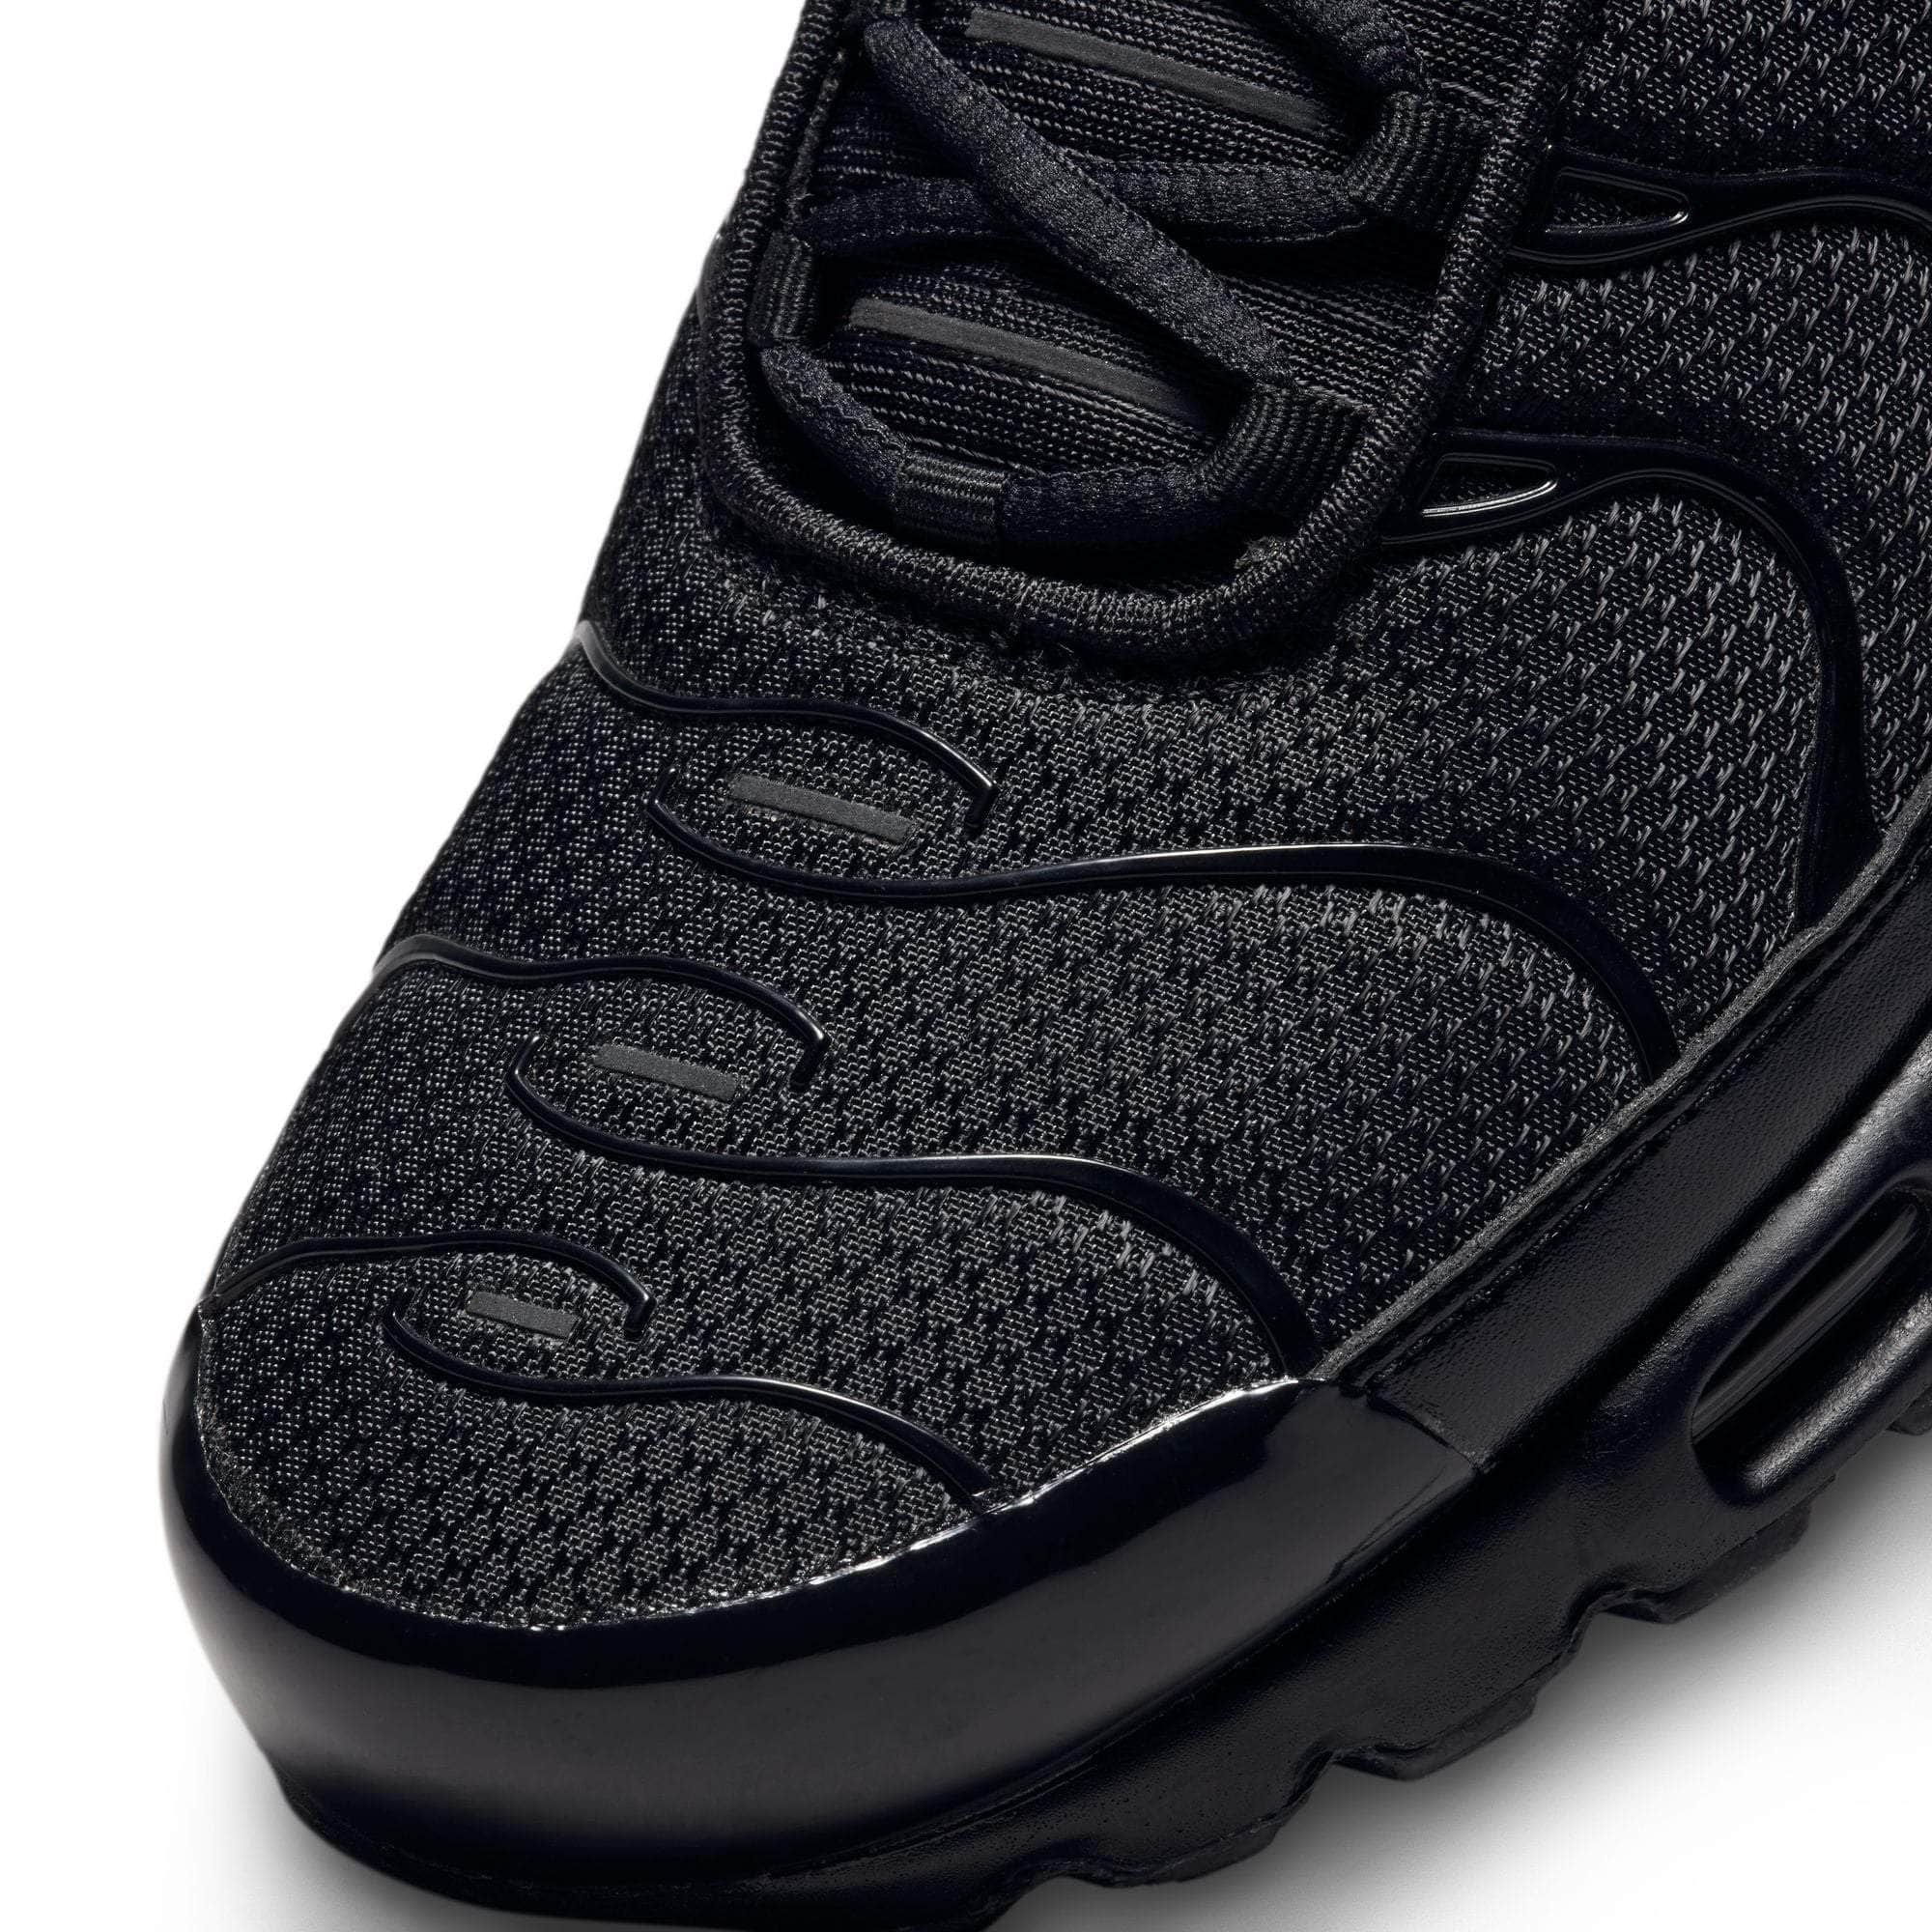 NIKE FOOTWEAR Nike Air Max Plus - Men's